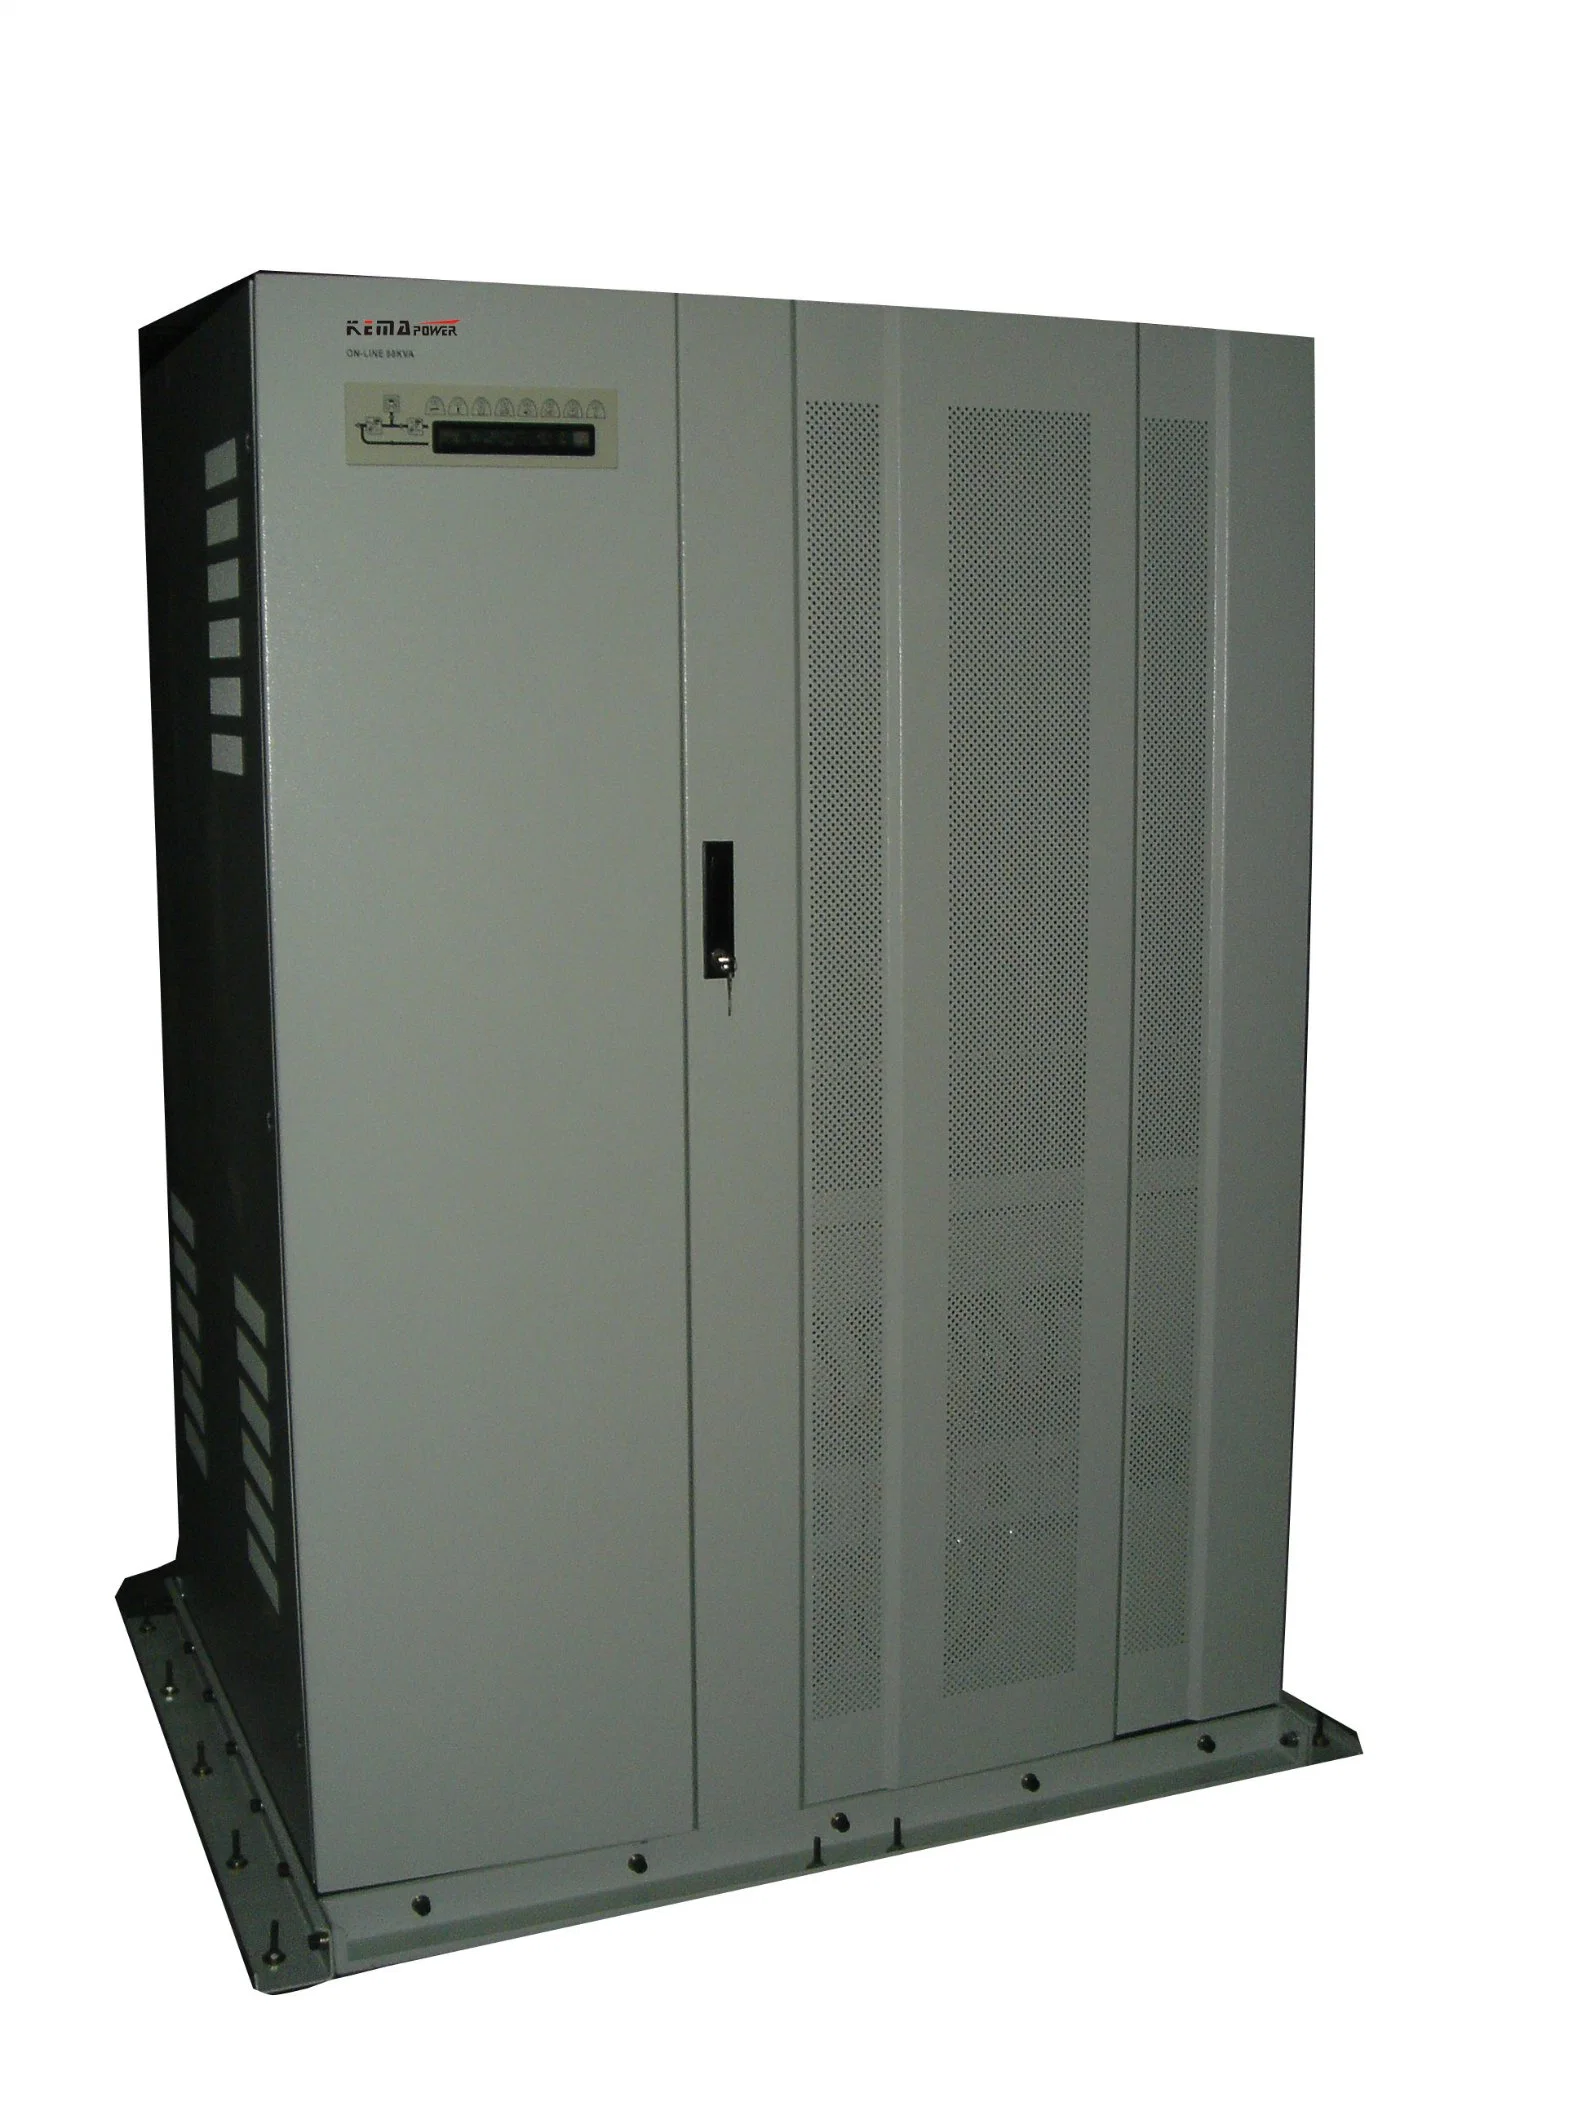 Tc120kVA 3: 1 نظام إمداد الطاقة غير القابل للانقطاع (UPS) بتصميم مزدوج التحويل صحيح على الخط يوفر حماية جميع القدرة